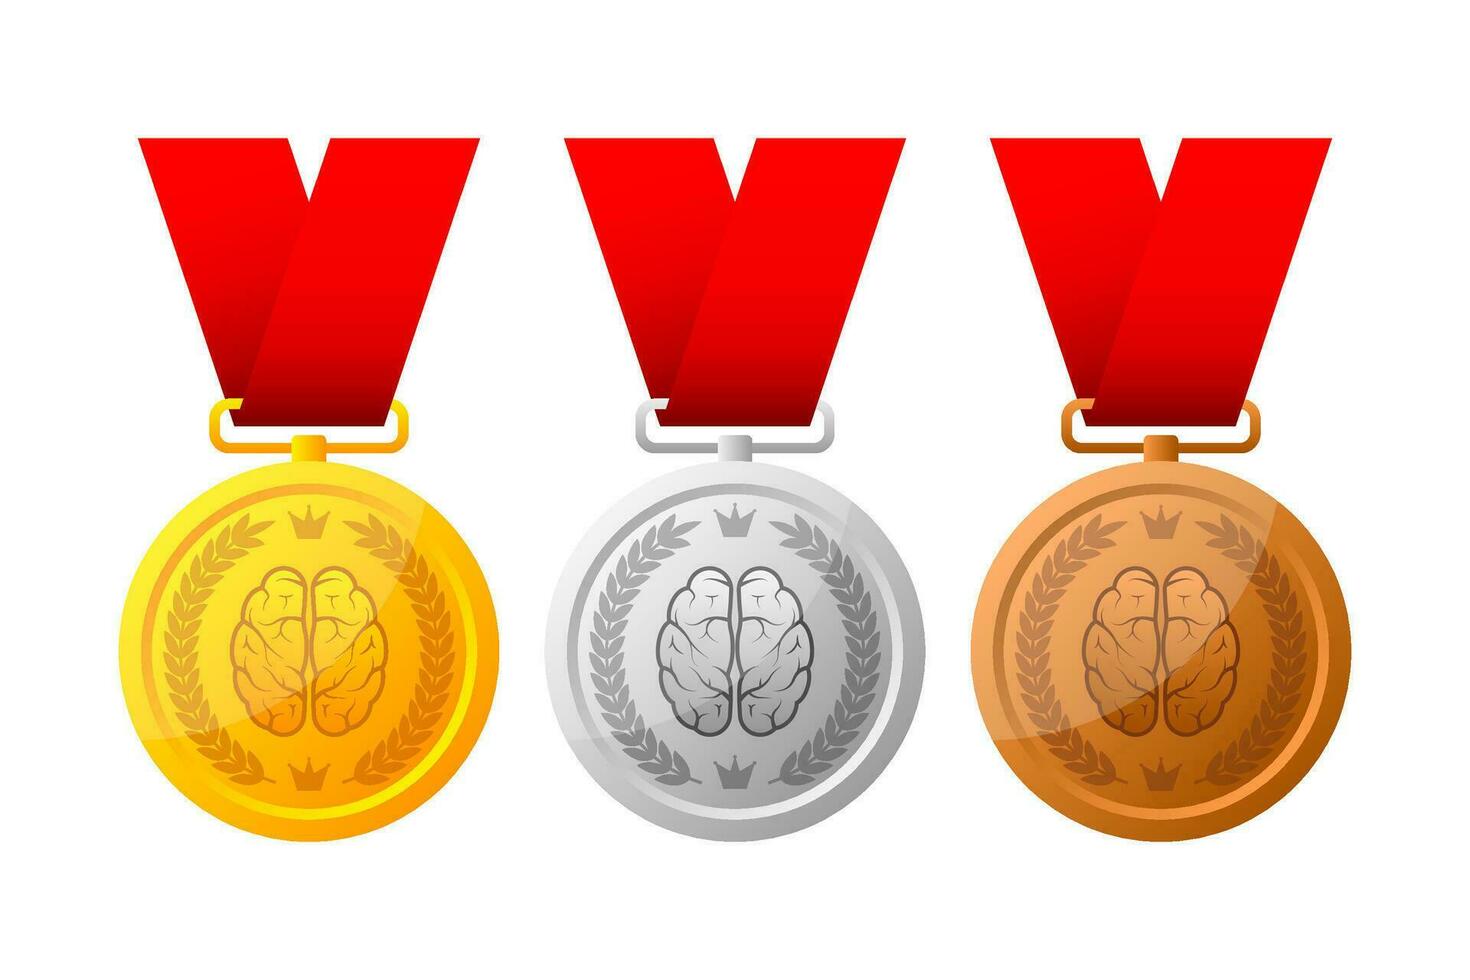 goud, zilver en bronzen medaille, kampioen en winnaar prijzen - 1e, 2e en 3e plaats prijzen set. vector